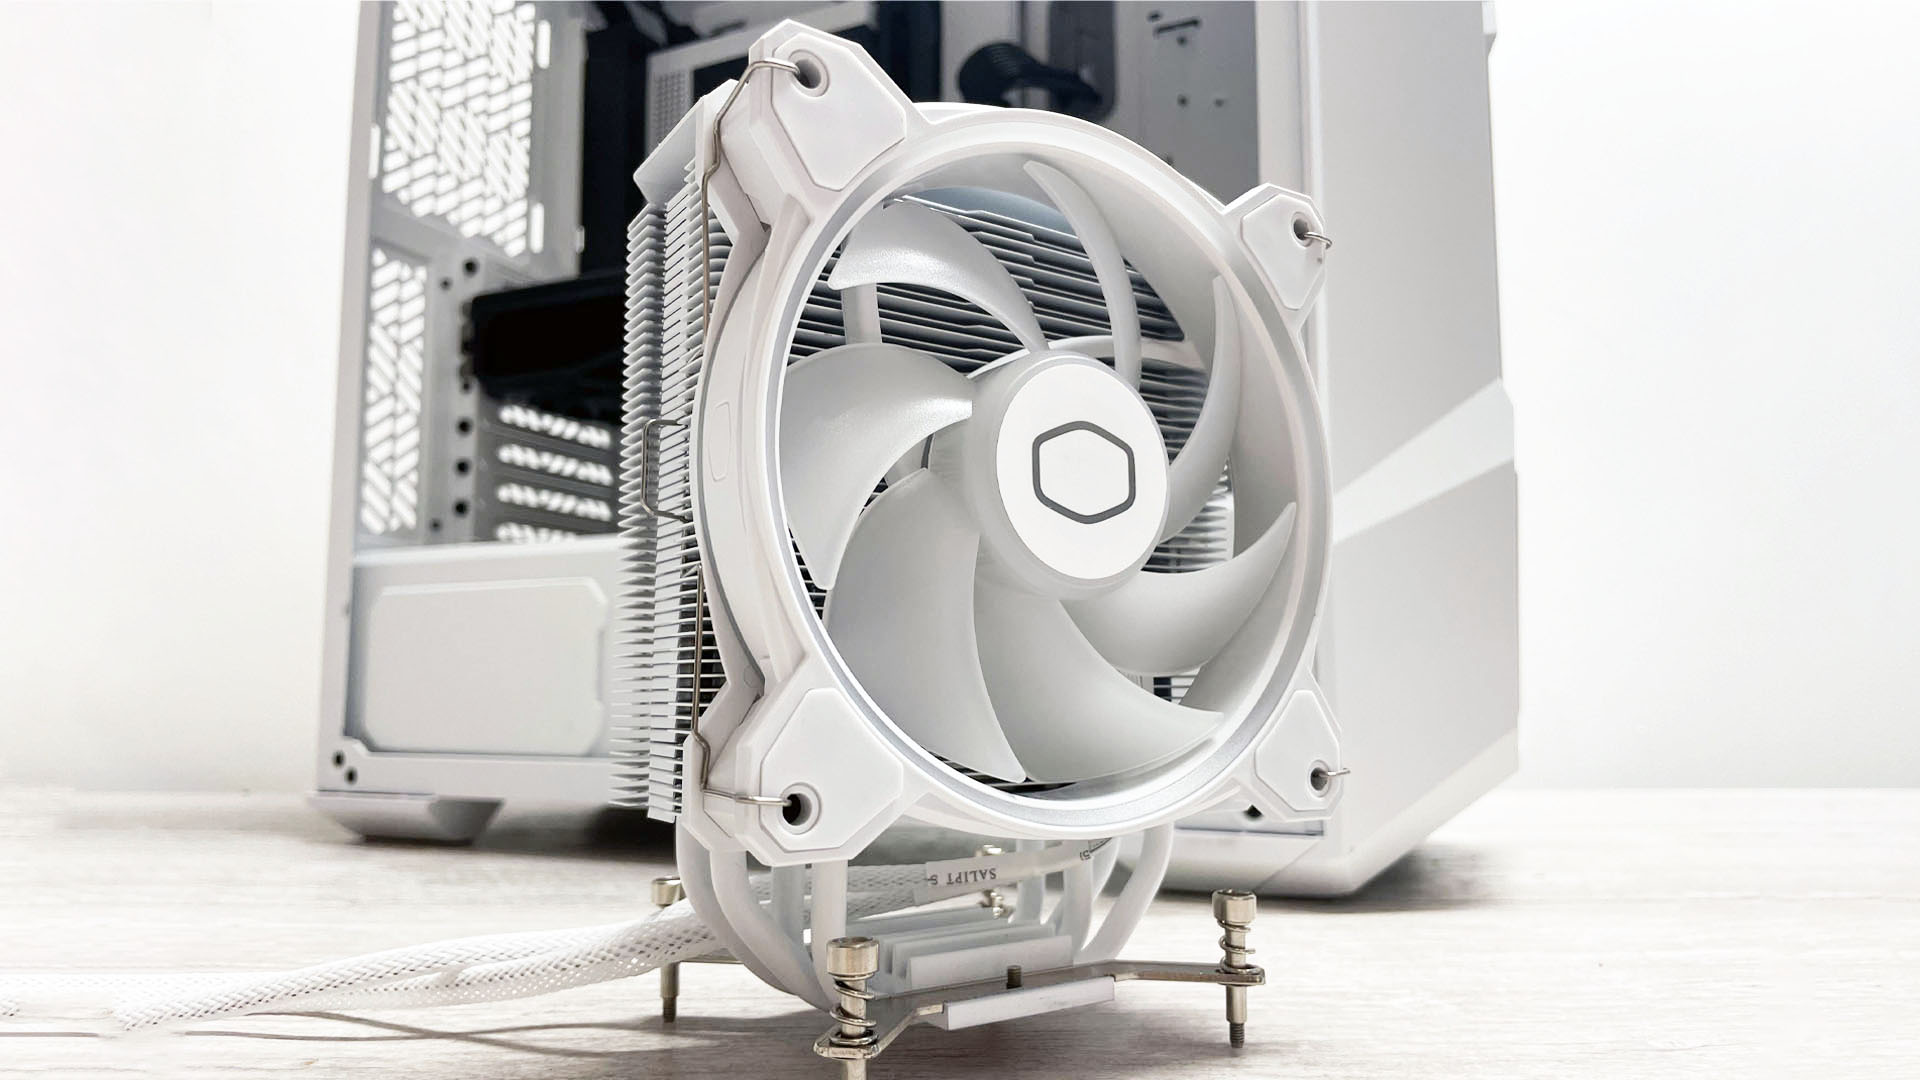 Best CPU cooler: Cooler Master Hyper 212 CPU air cooler